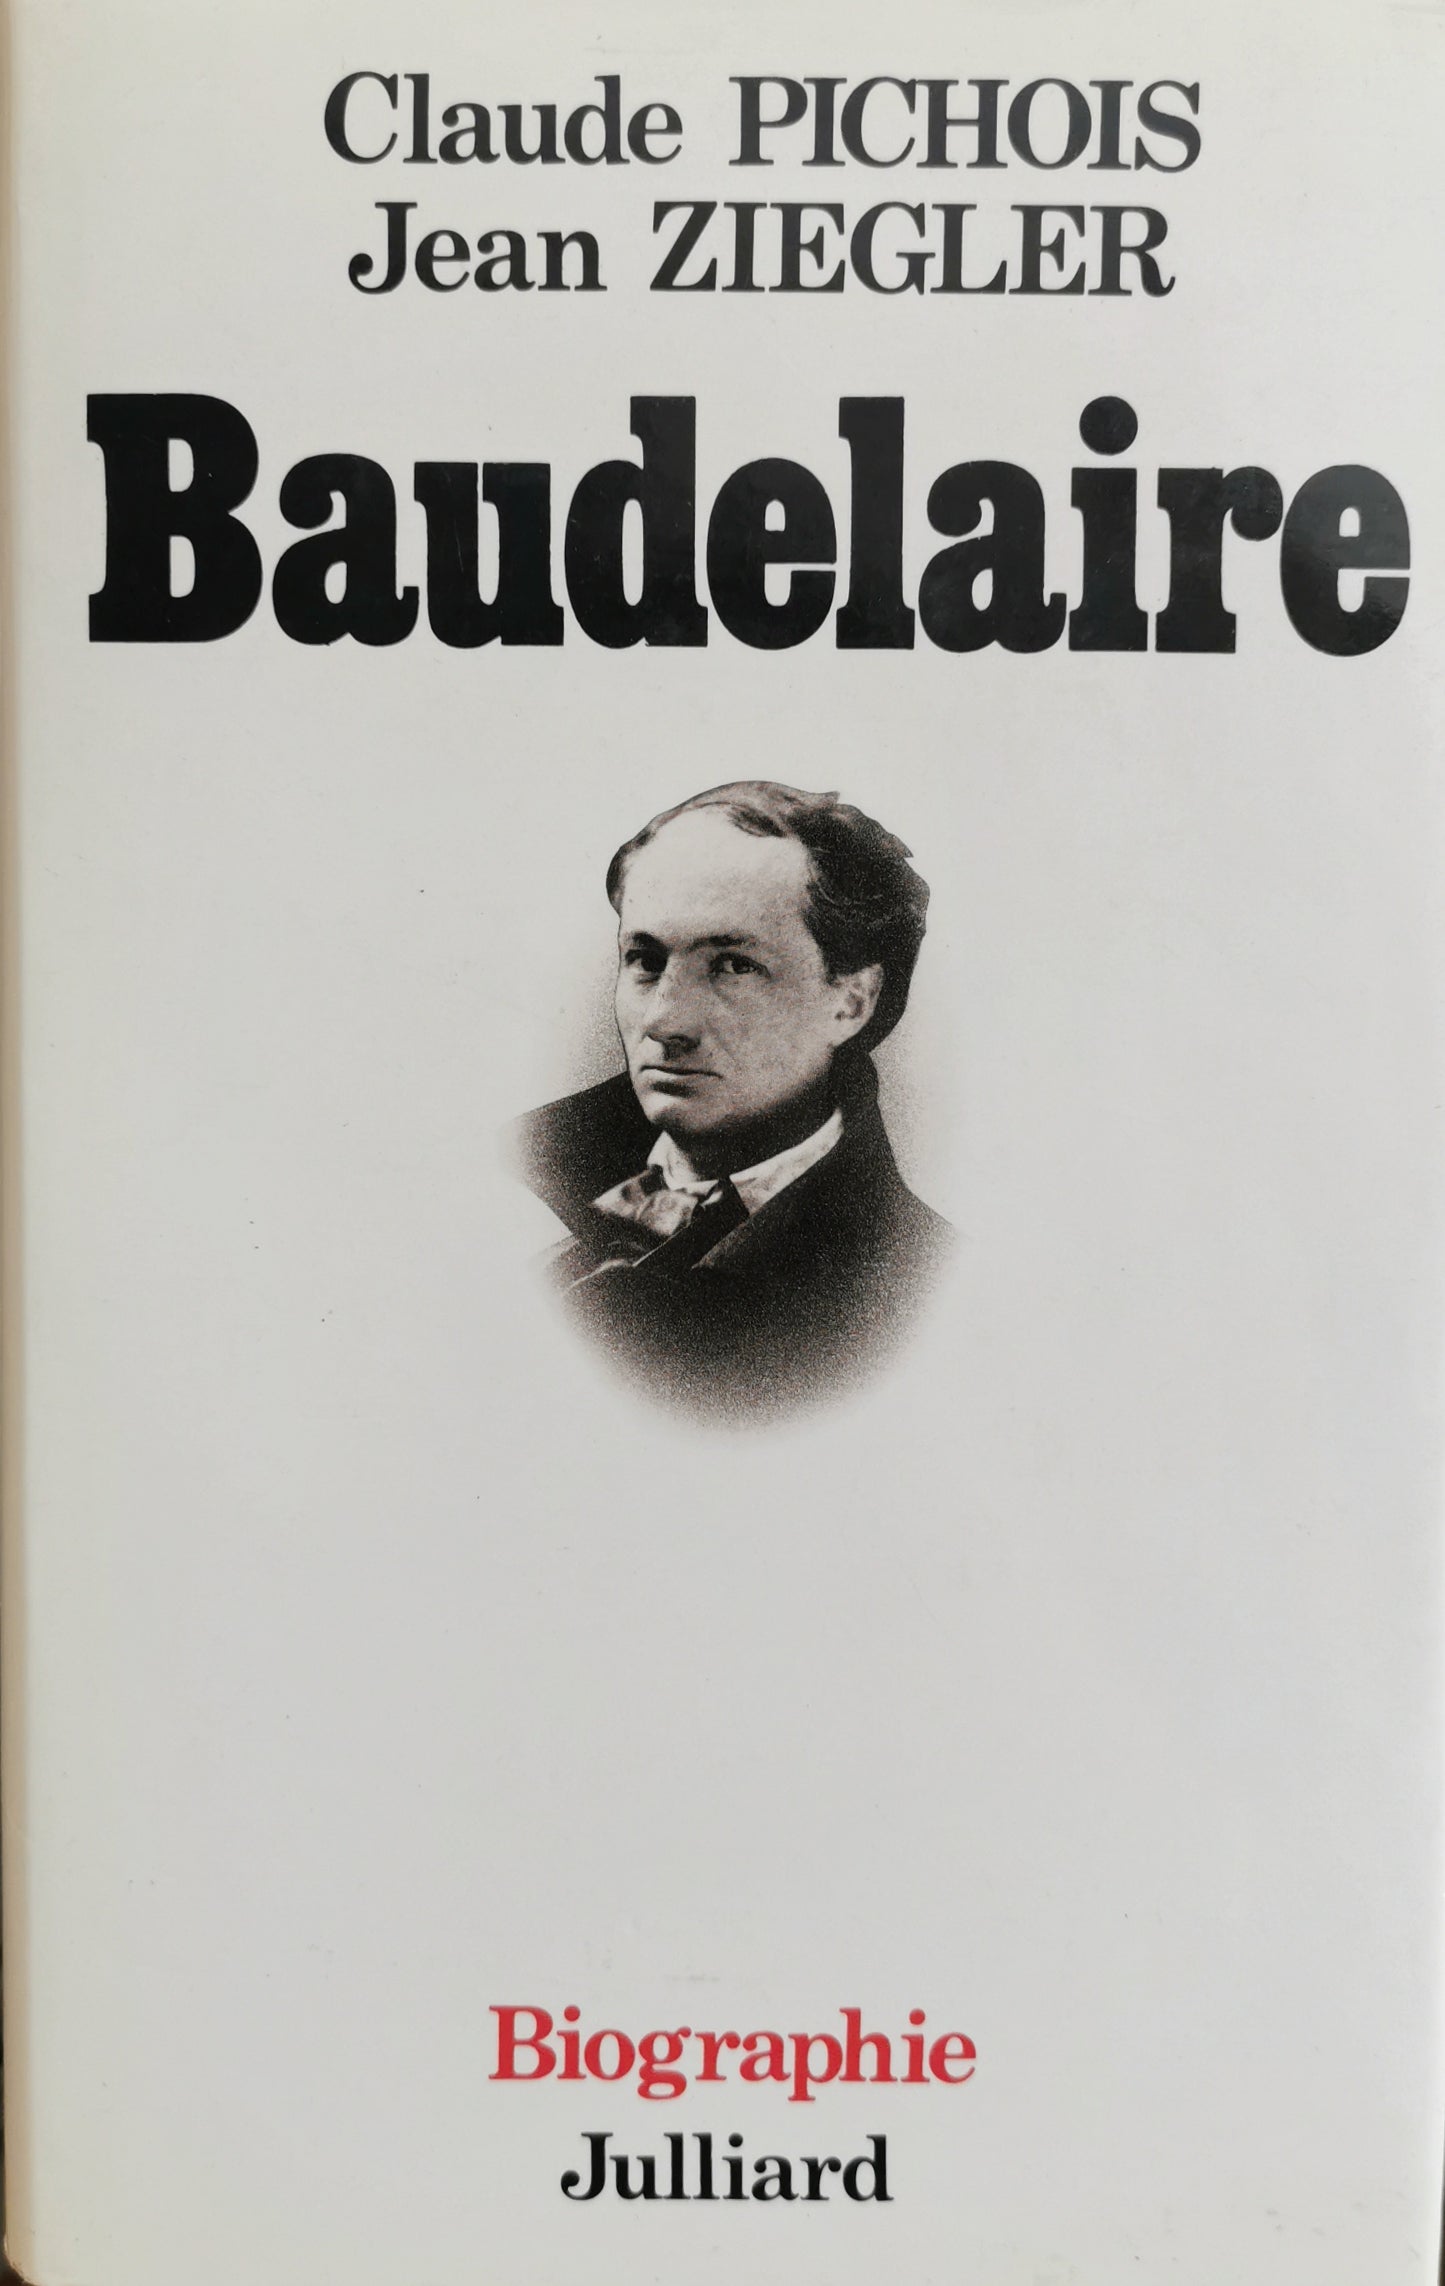 Baudelaire, Claude Pichois, Jean Ziegler, "Les Vivants", dir. Camille Bourniquel, Julliard, 1987.